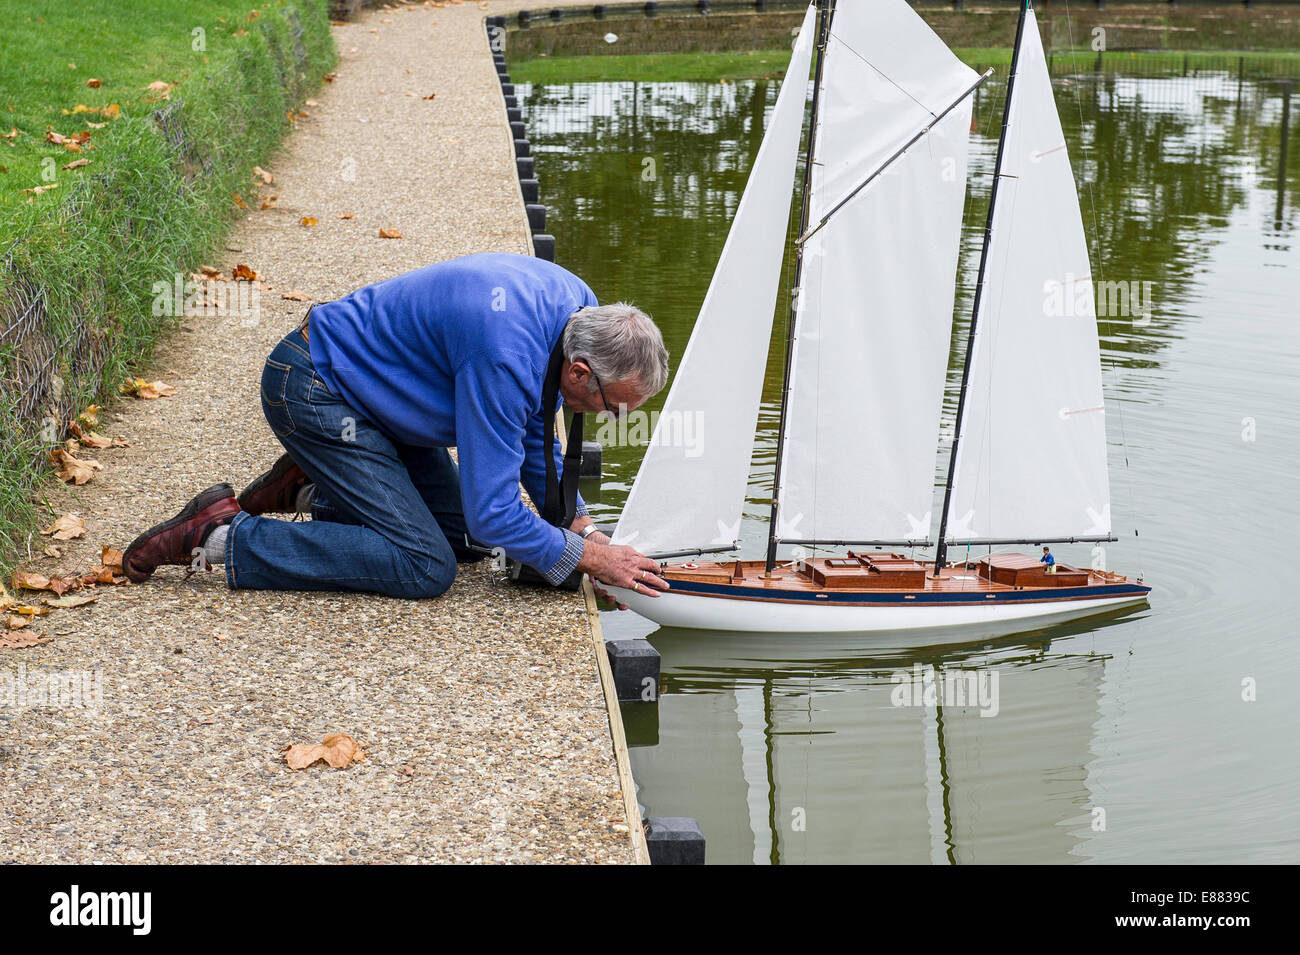 Un passionné de bateau modèle de lancer son yacht modèle sur un lac à Maldon dans l'Essex. Banque D'Images